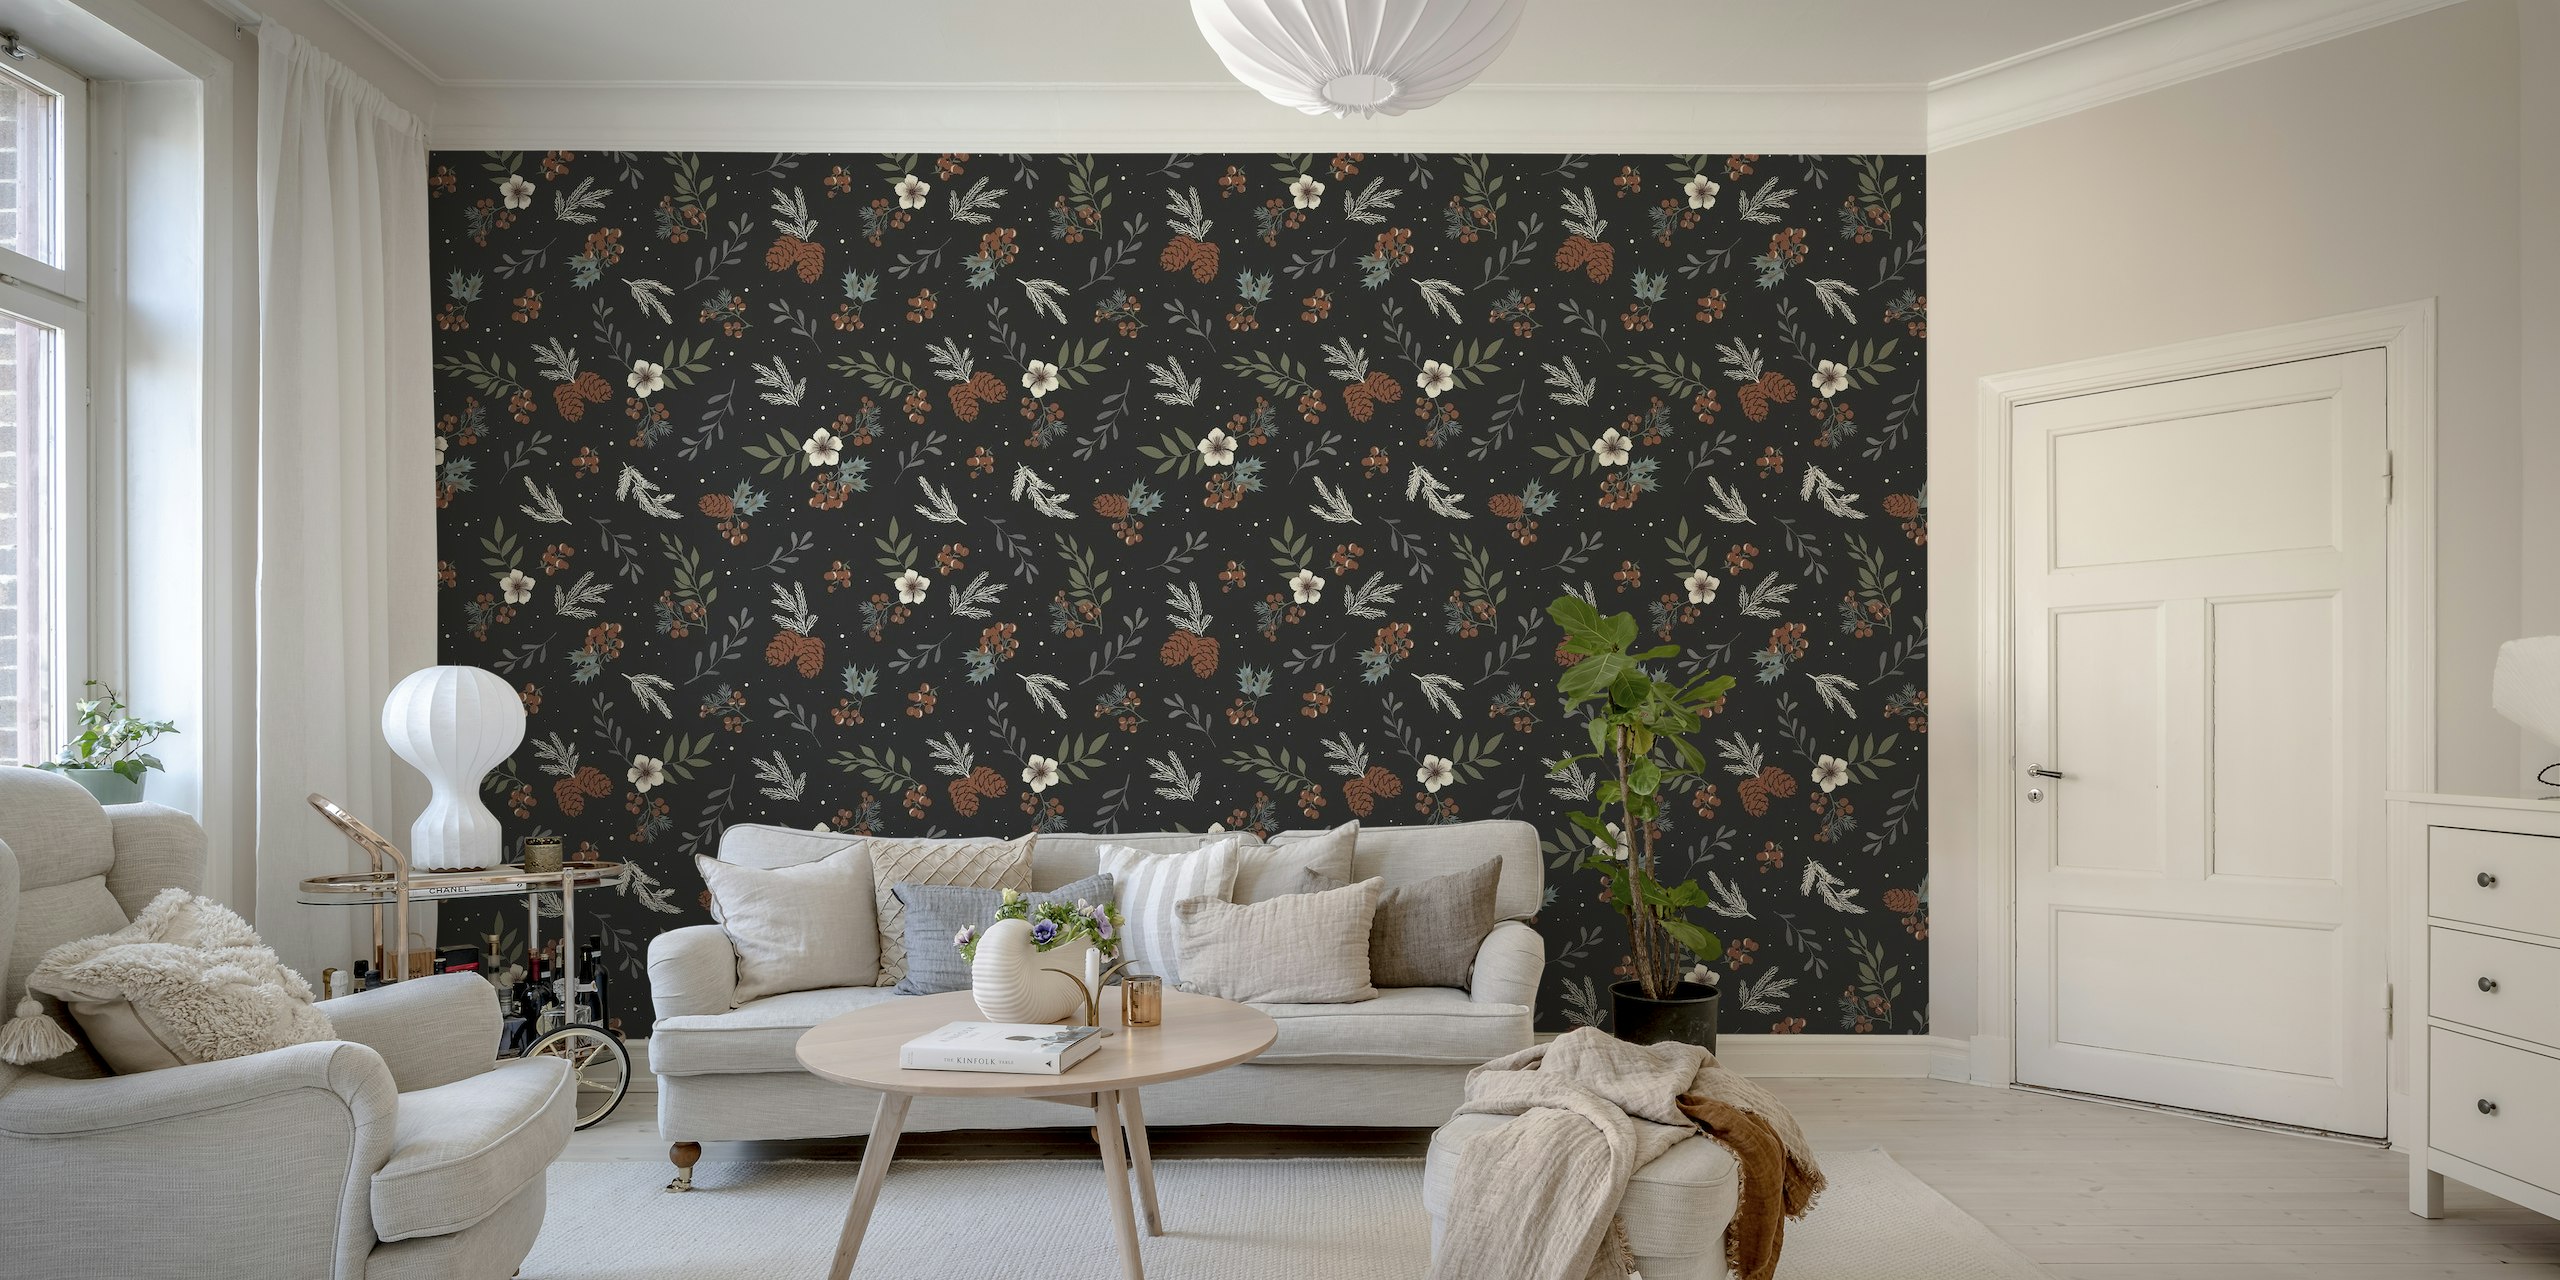 Winterlich inspiriertes Wandbild mit Tannenzweigen, Stechpalmenbeeren und Blumen auf dunklem Hintergrund